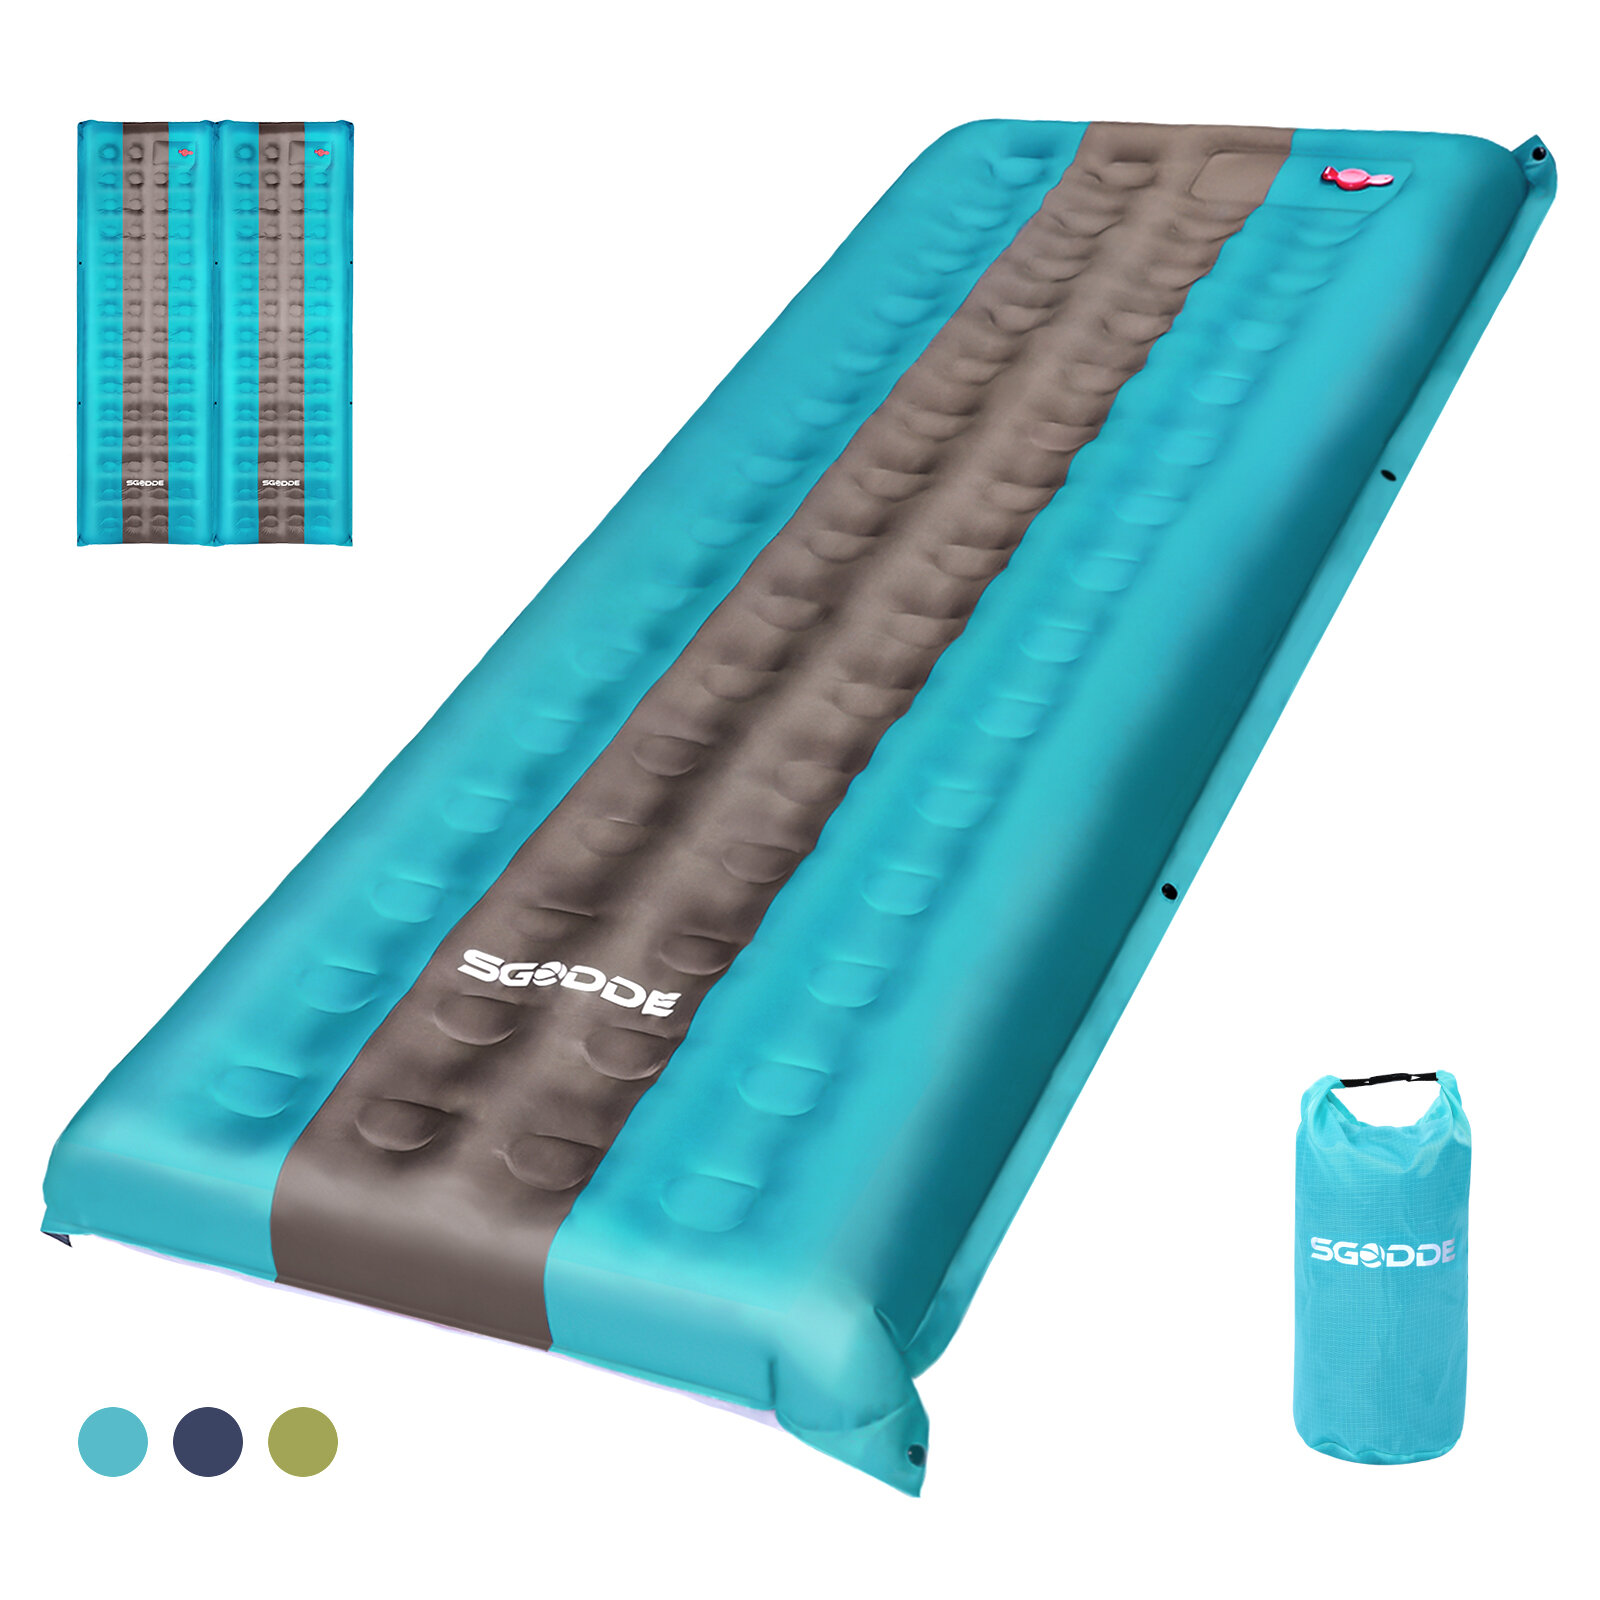 SGODDE 80D Spleißbare Ultraleichte Isomatte Tragbare Aufblasbare Matte Wasserdichte Outdoor Camping Reise Schlafmatte